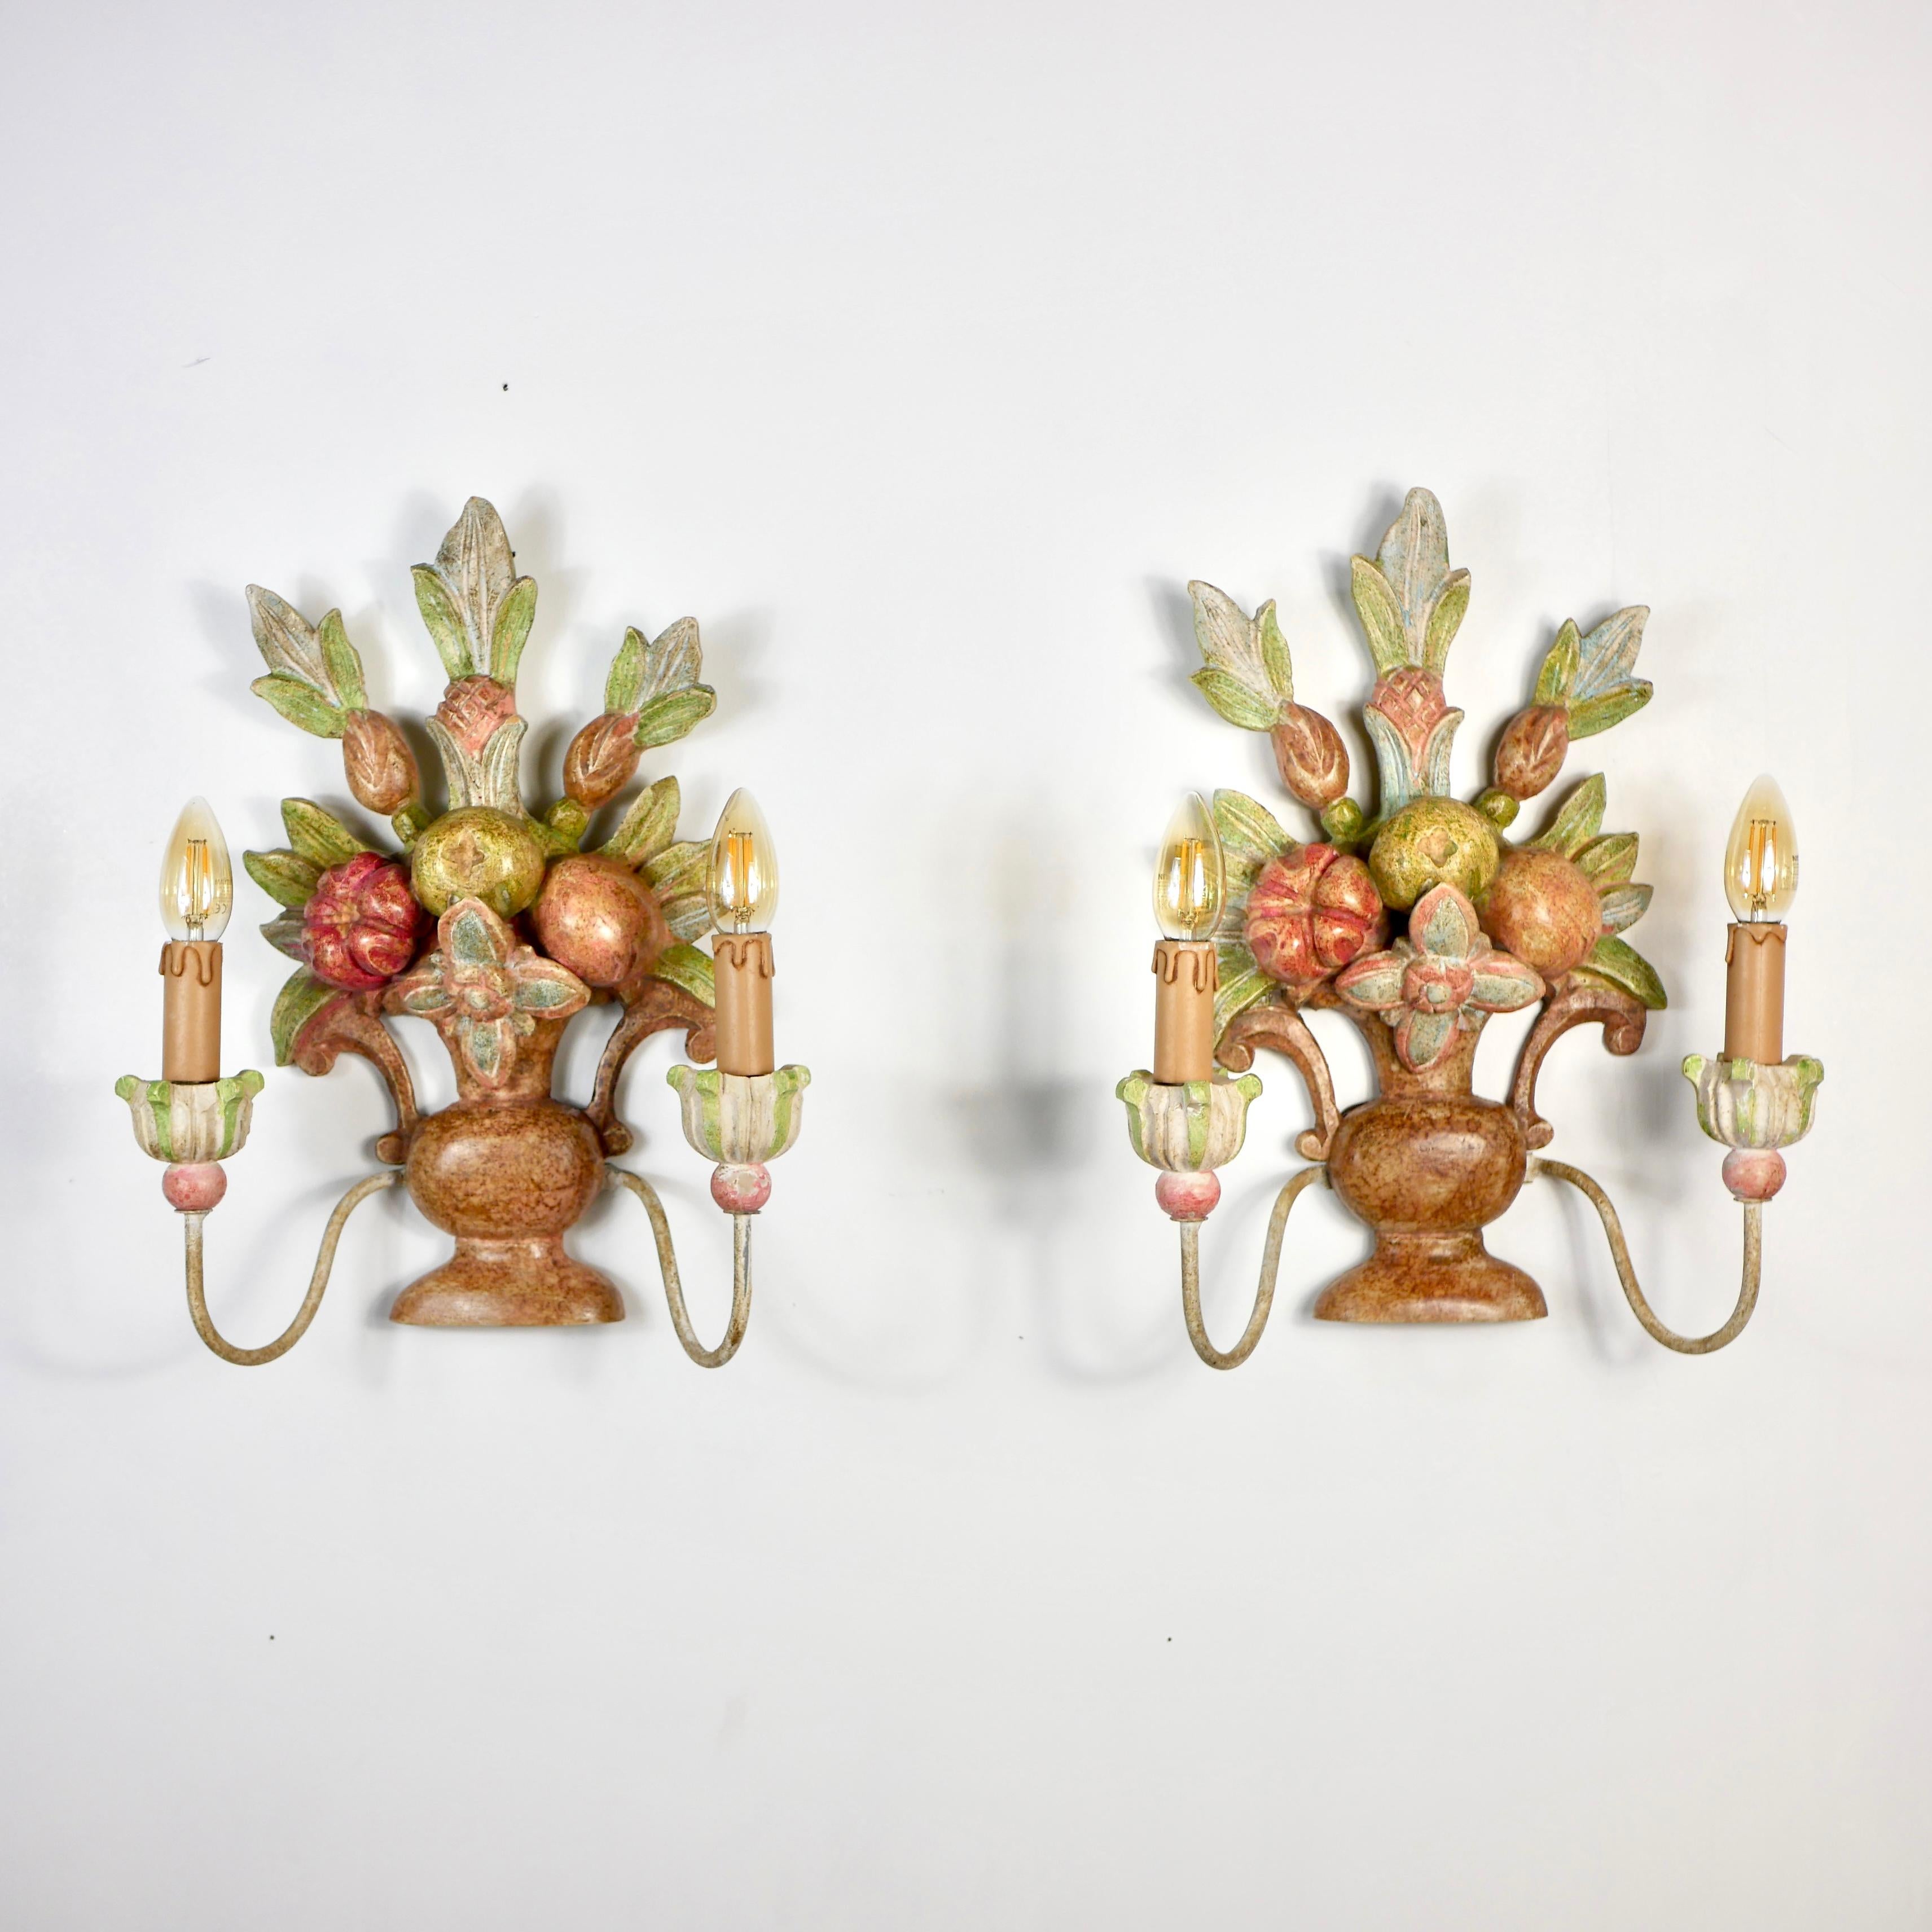 Magnifique paire d'appliques en bois sculpté à la main, fabriquées en Italie au début du XXe siècle, représentant des bouquets / paniers de fleurs, de feuilles et de fruits, dans le style de la Maison Jansen.
Peinte à la main, chaque applique